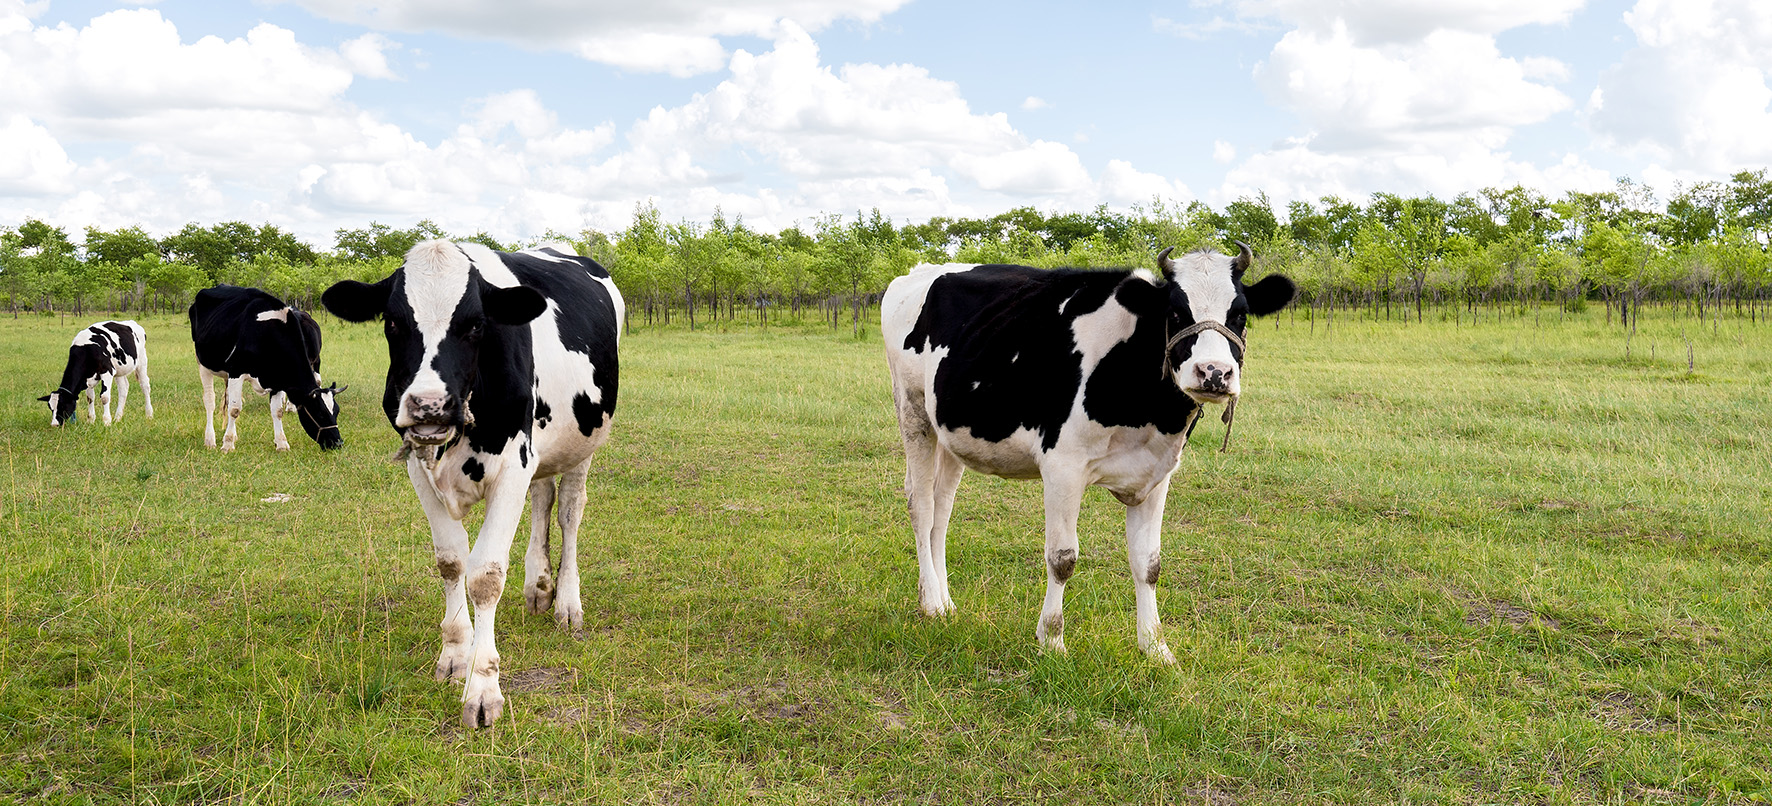 Op deze foto zie je koeien in een weiland.